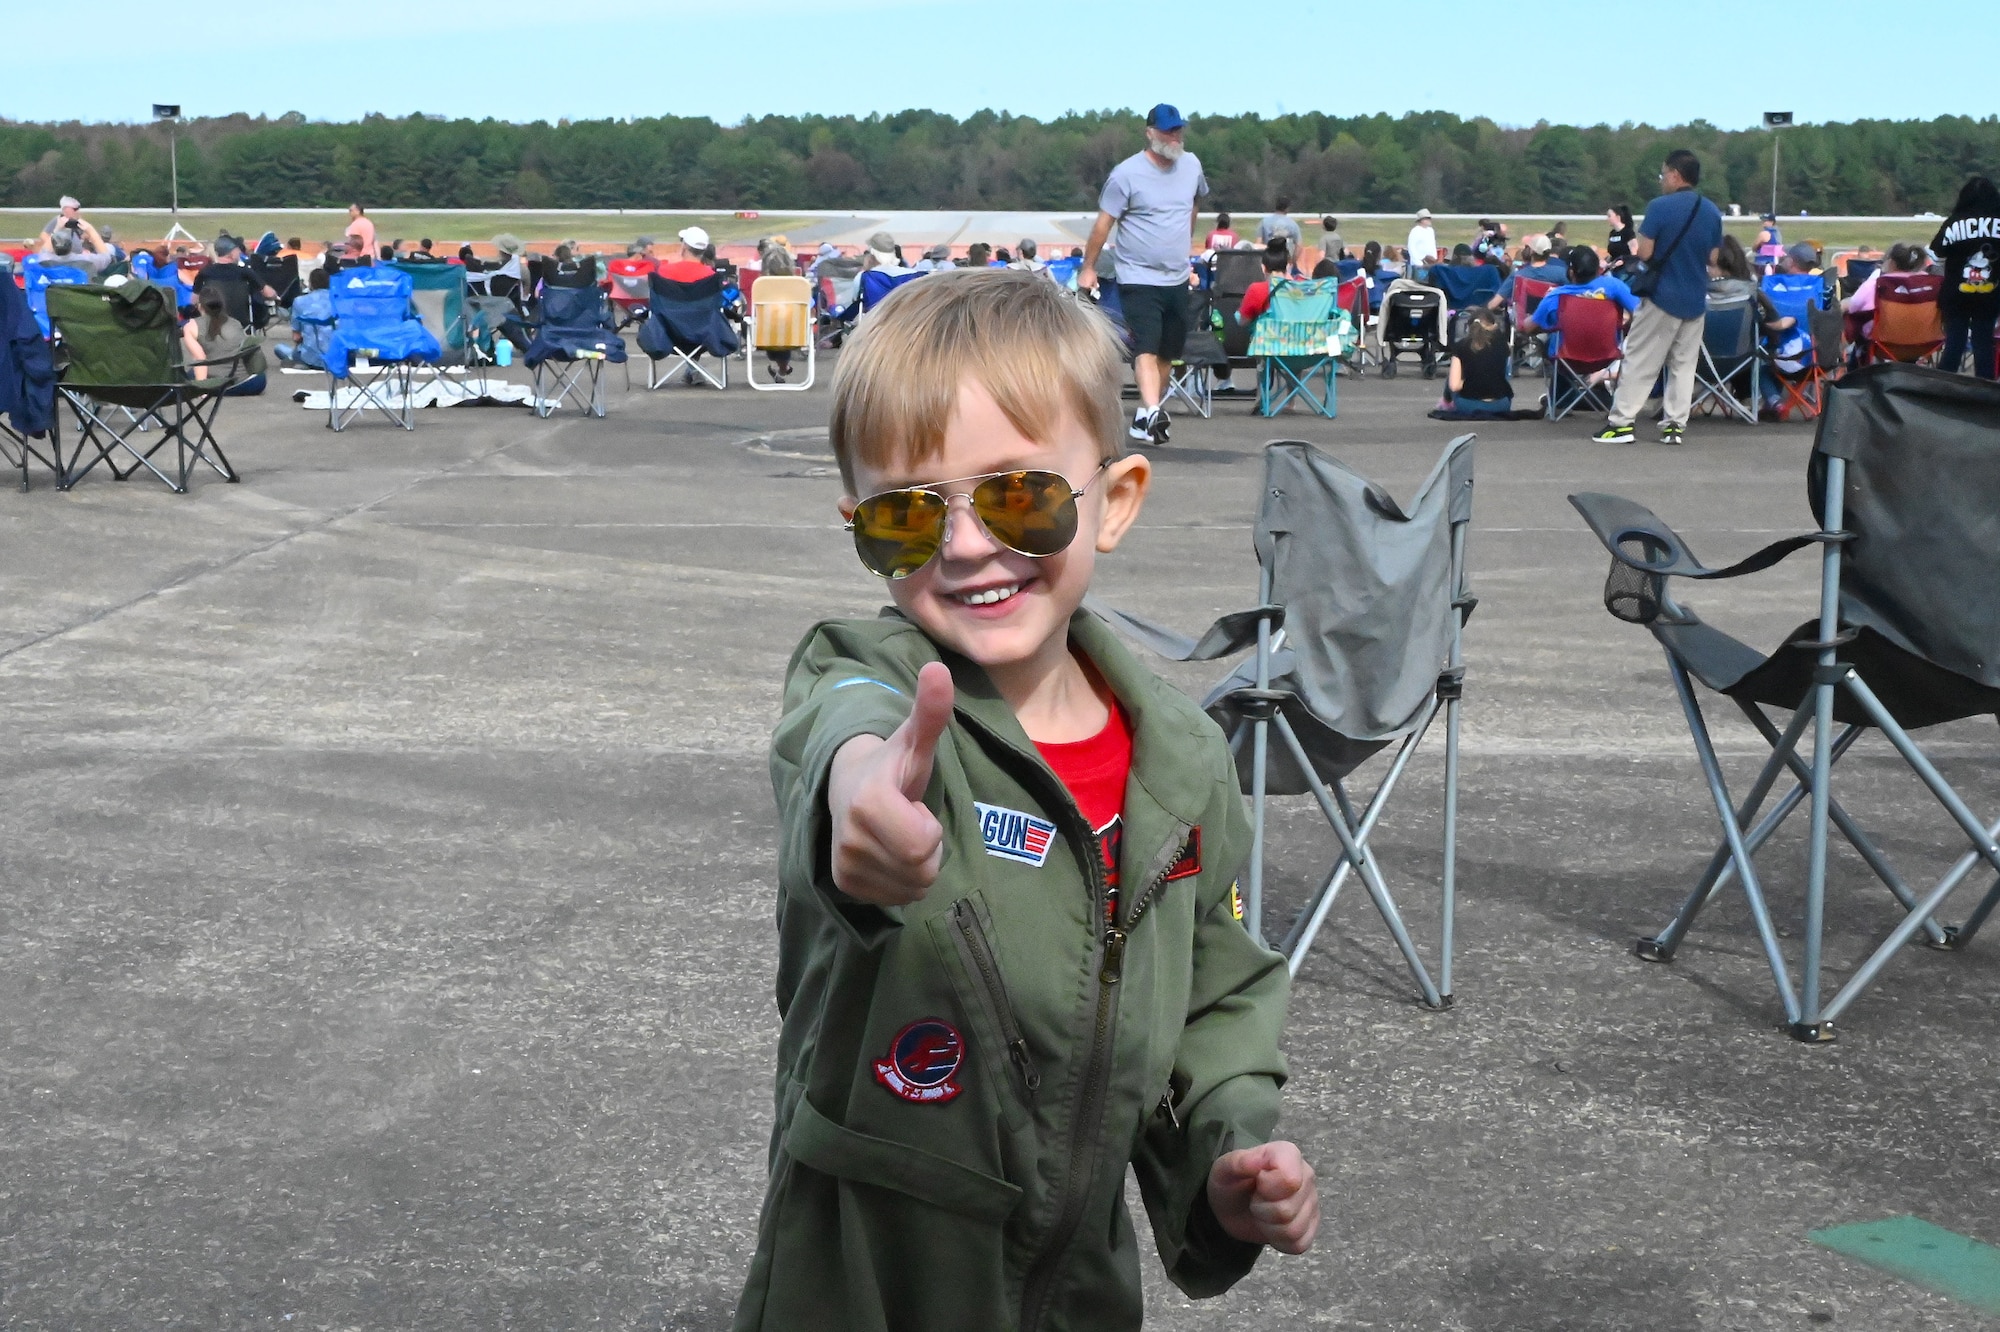 Little boy posing in flight suit